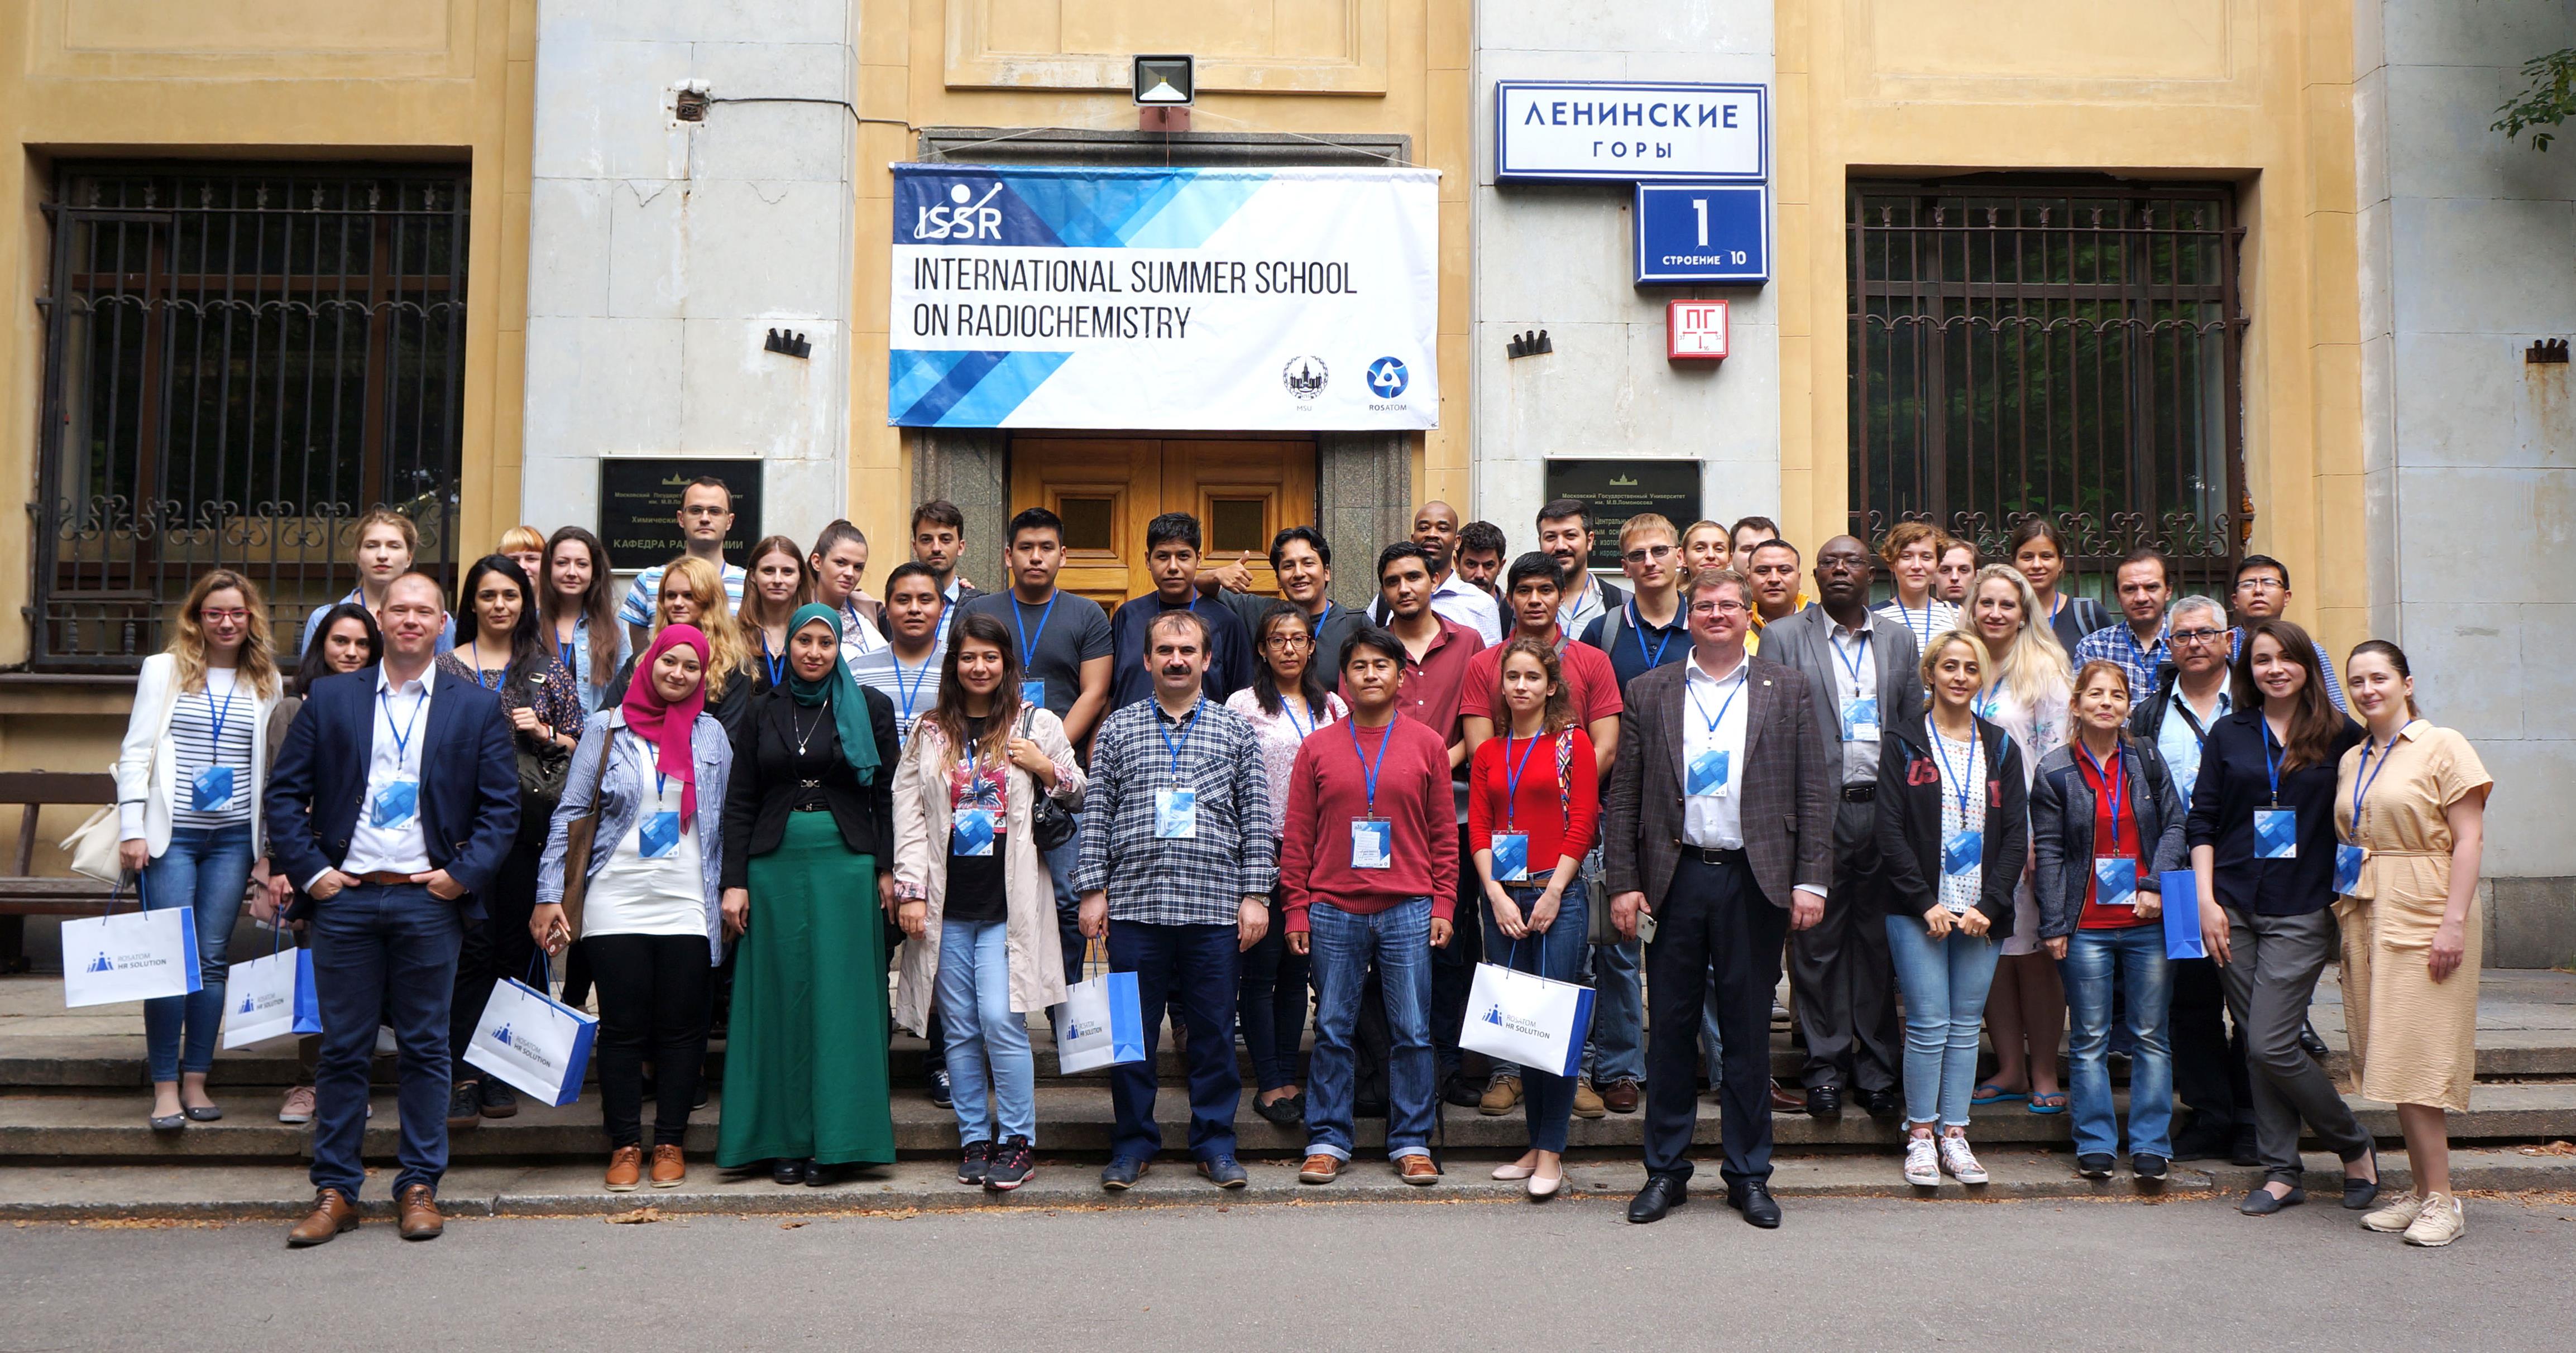  انتهت بنجاح دورة المدرسة الصيفية الدولية للكيمياء الإشعاعية بجامعة موسكو الحكومية والتي شارك فيها ممثلون عن مصر وتركيا.